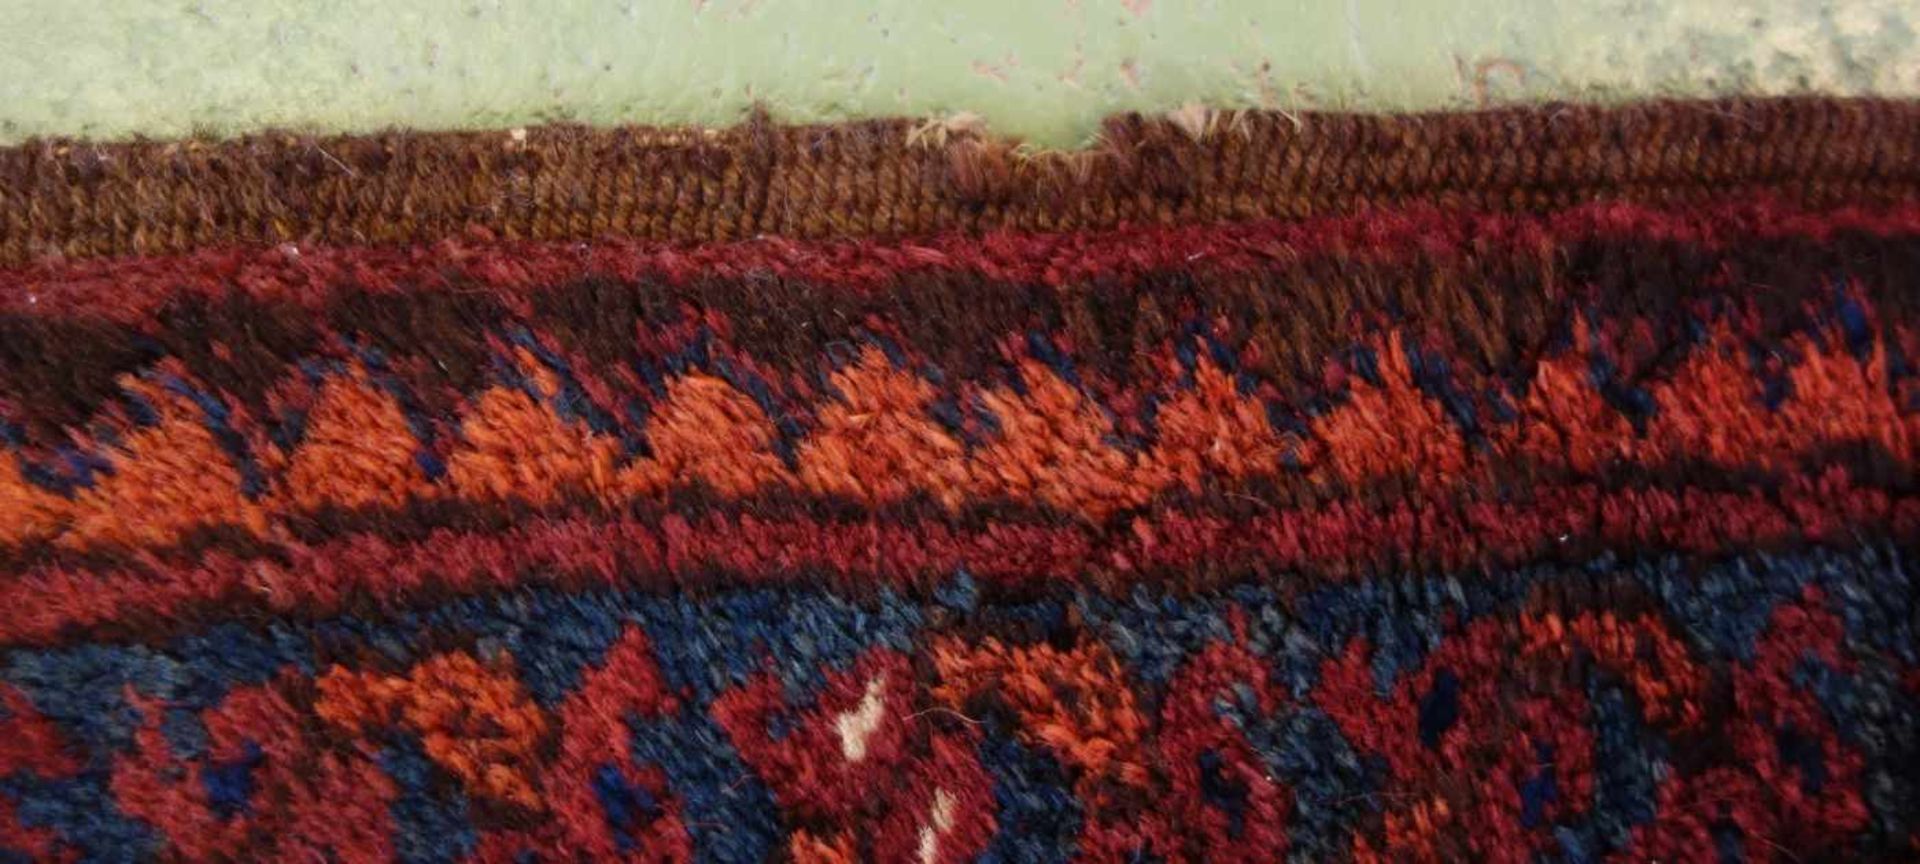 BESCHIR (ERSARI BESCHIR) / KLEINER TEPPICH / carpet / Zentralasien oder Südturkestan, wahrscheinlich - Image 11 of 15